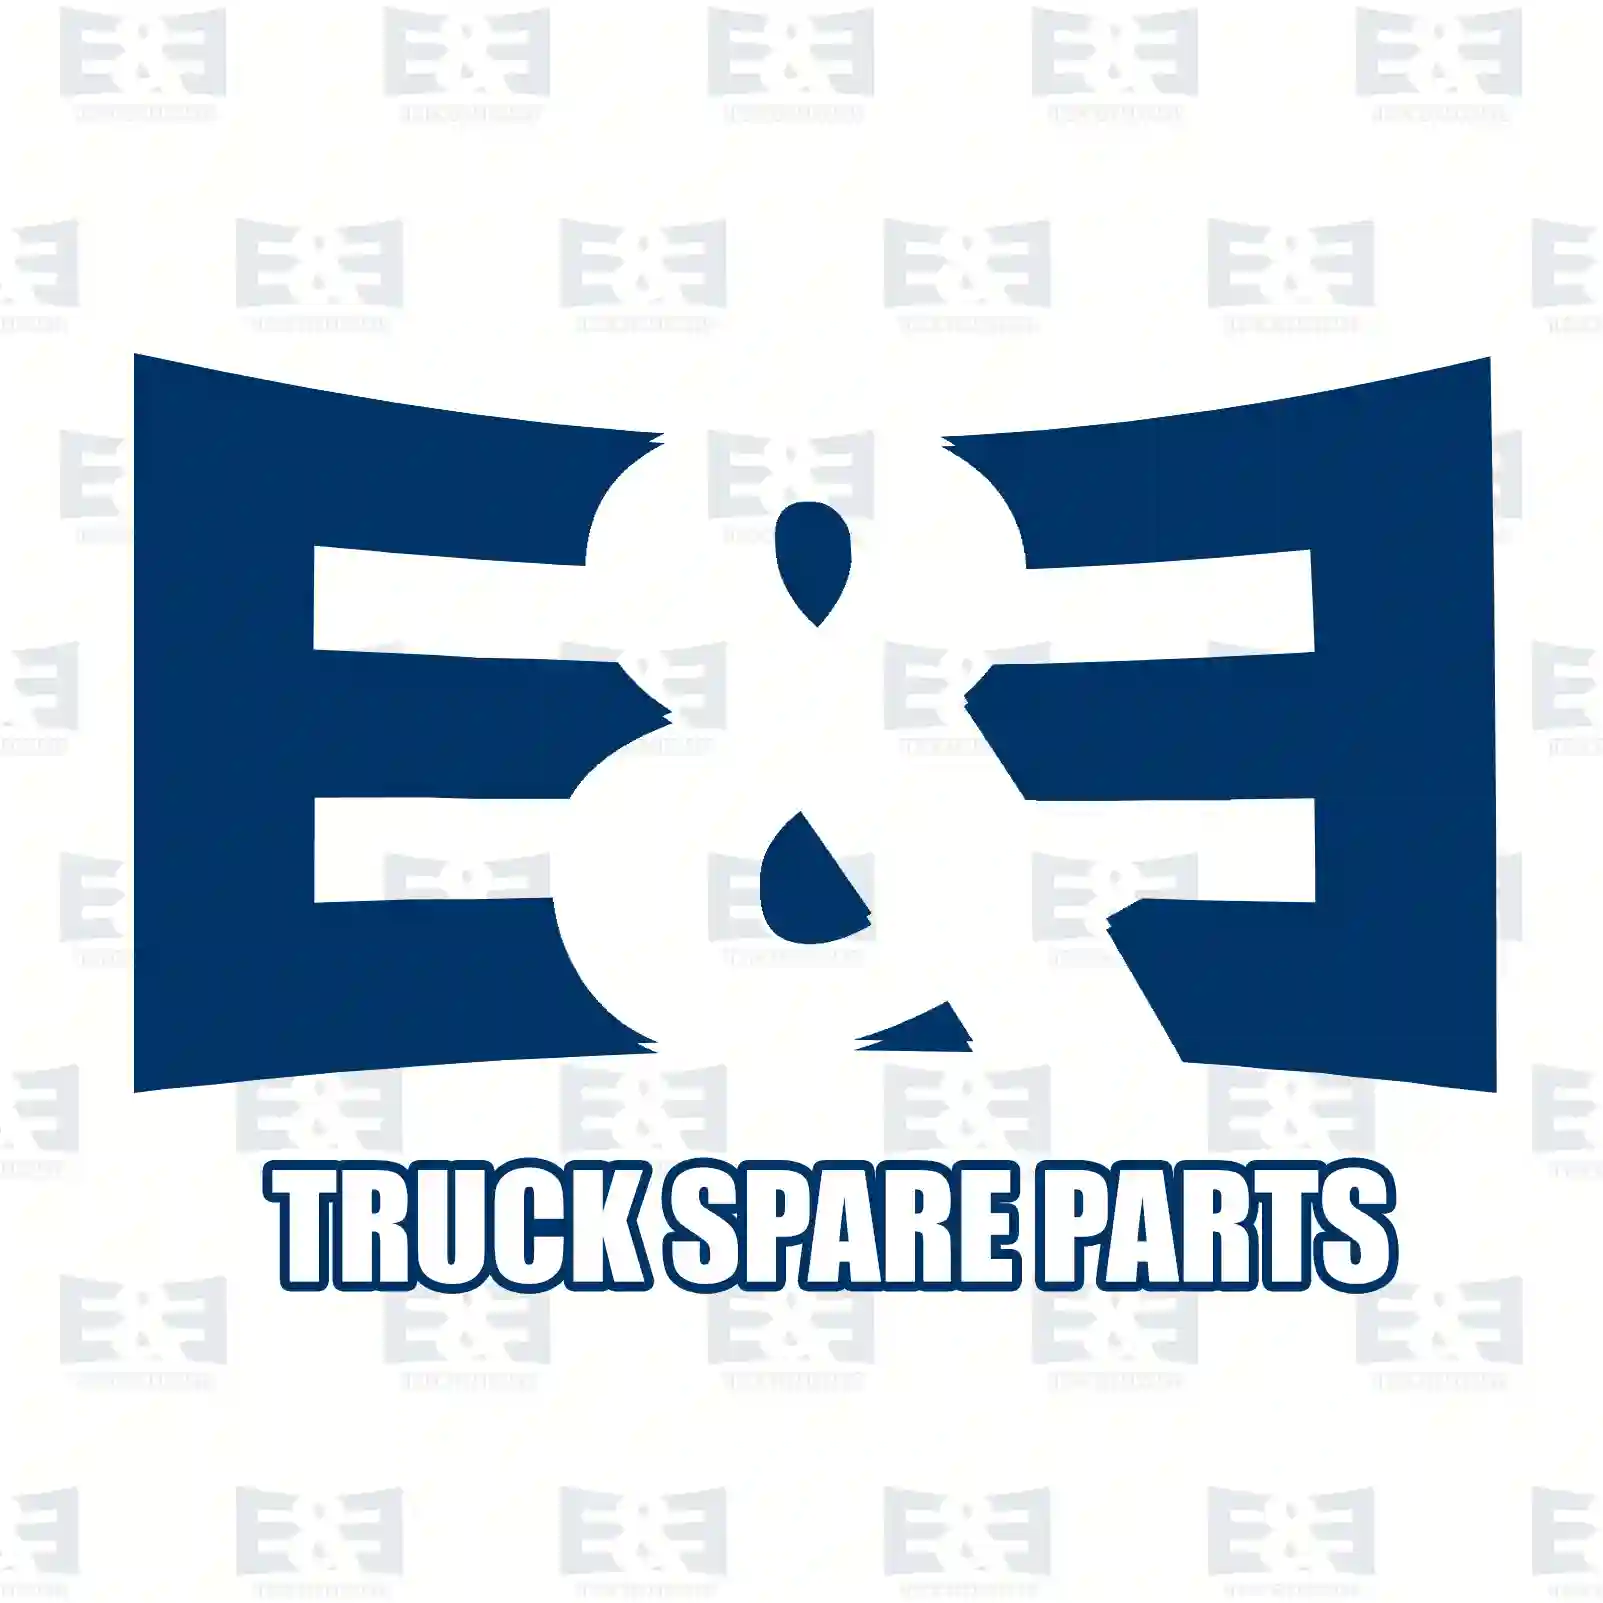 4-circuit-protection valve, 2E2296886, N1011066148, 011066148, , , , , , , , , ||  2E2296886 E&E Truck Spare Parts | Truck Spare Parts, Auotomotive Spare Parts 4-circuit-protection valve, 2E2296886, N1011066148, 011066148, , , , , , , , , ||  2E2296886 E&E Truck Spare Parts | Truck Spare Parts, Auotomotive Spare Parts